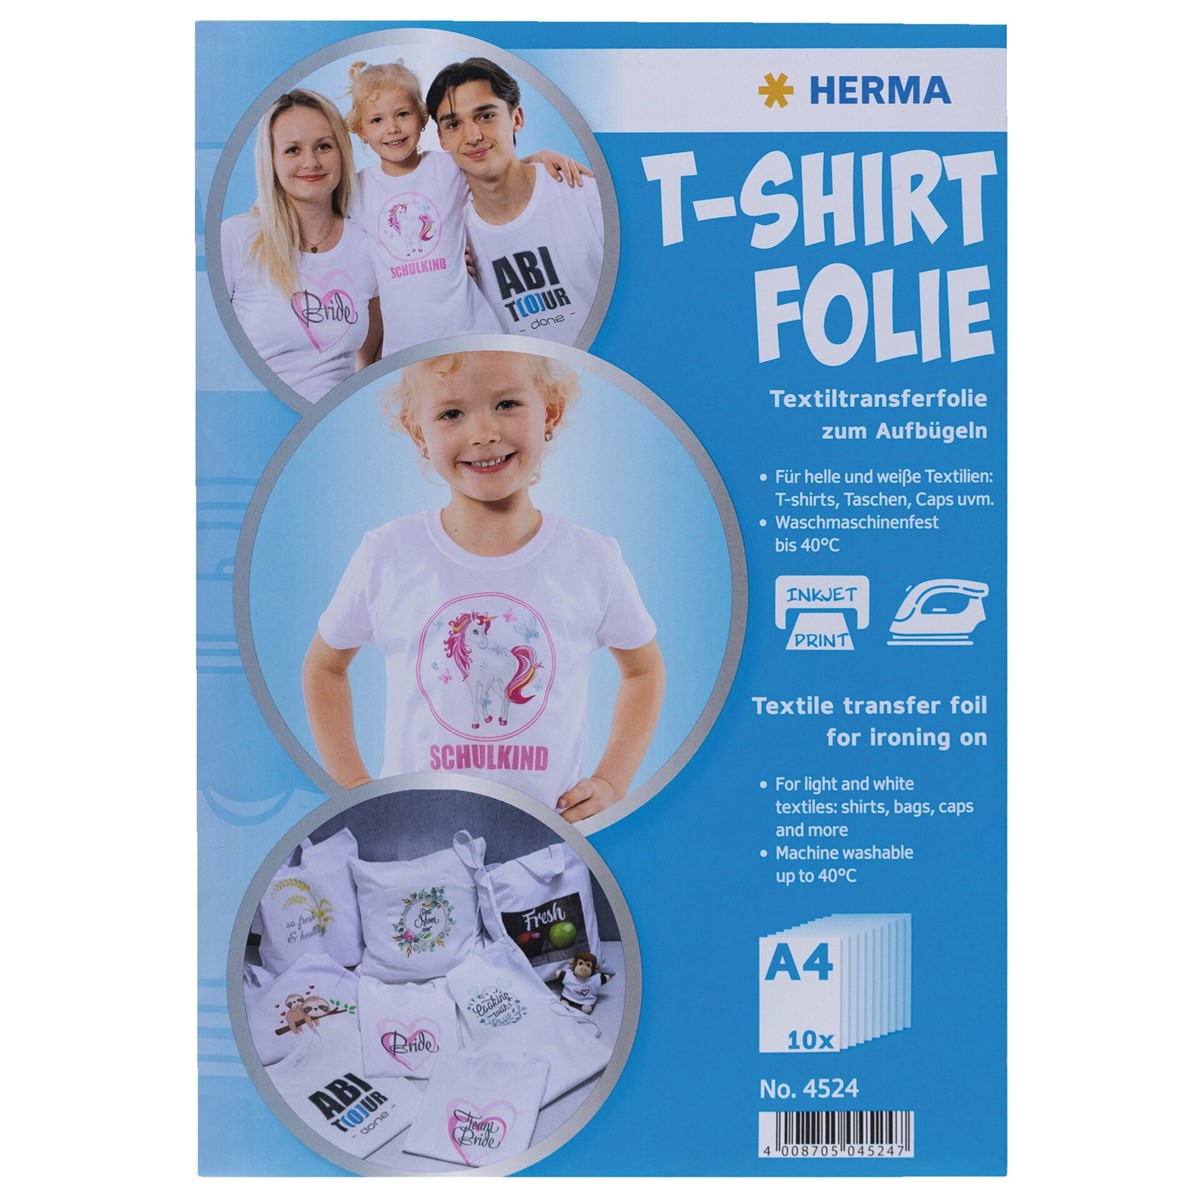 HERMA 4524 - T-Shirt Folie für Textilien, 10 Blatt